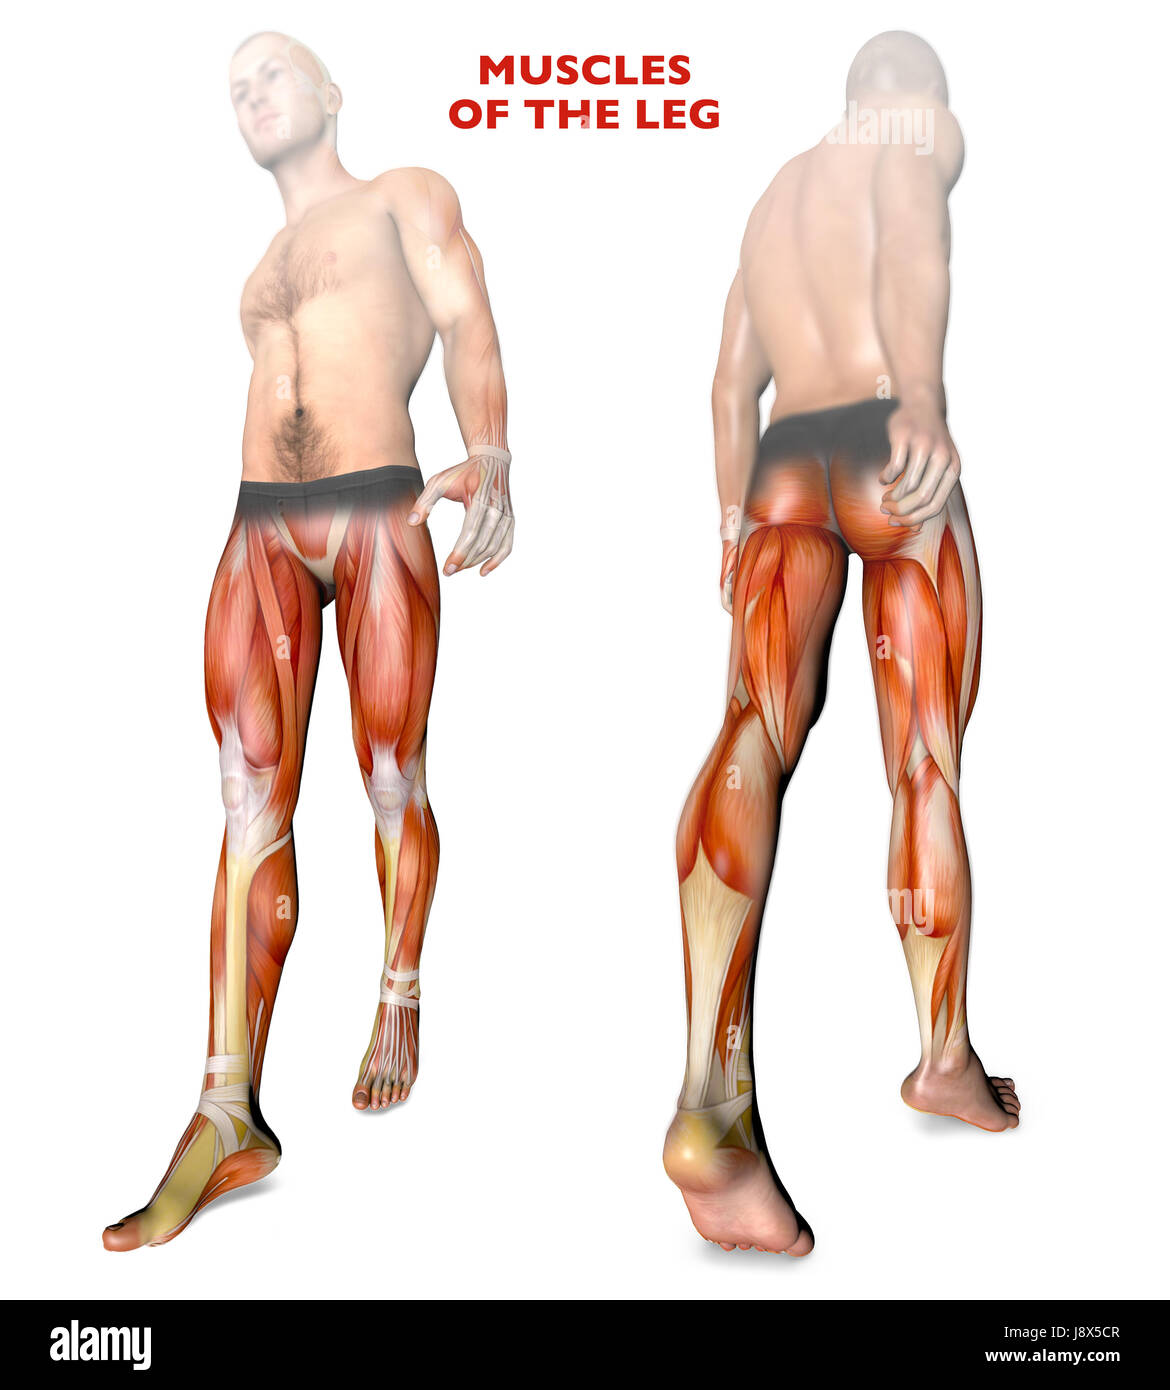 Muscles corps humain Banque d'images détourées - Alamy